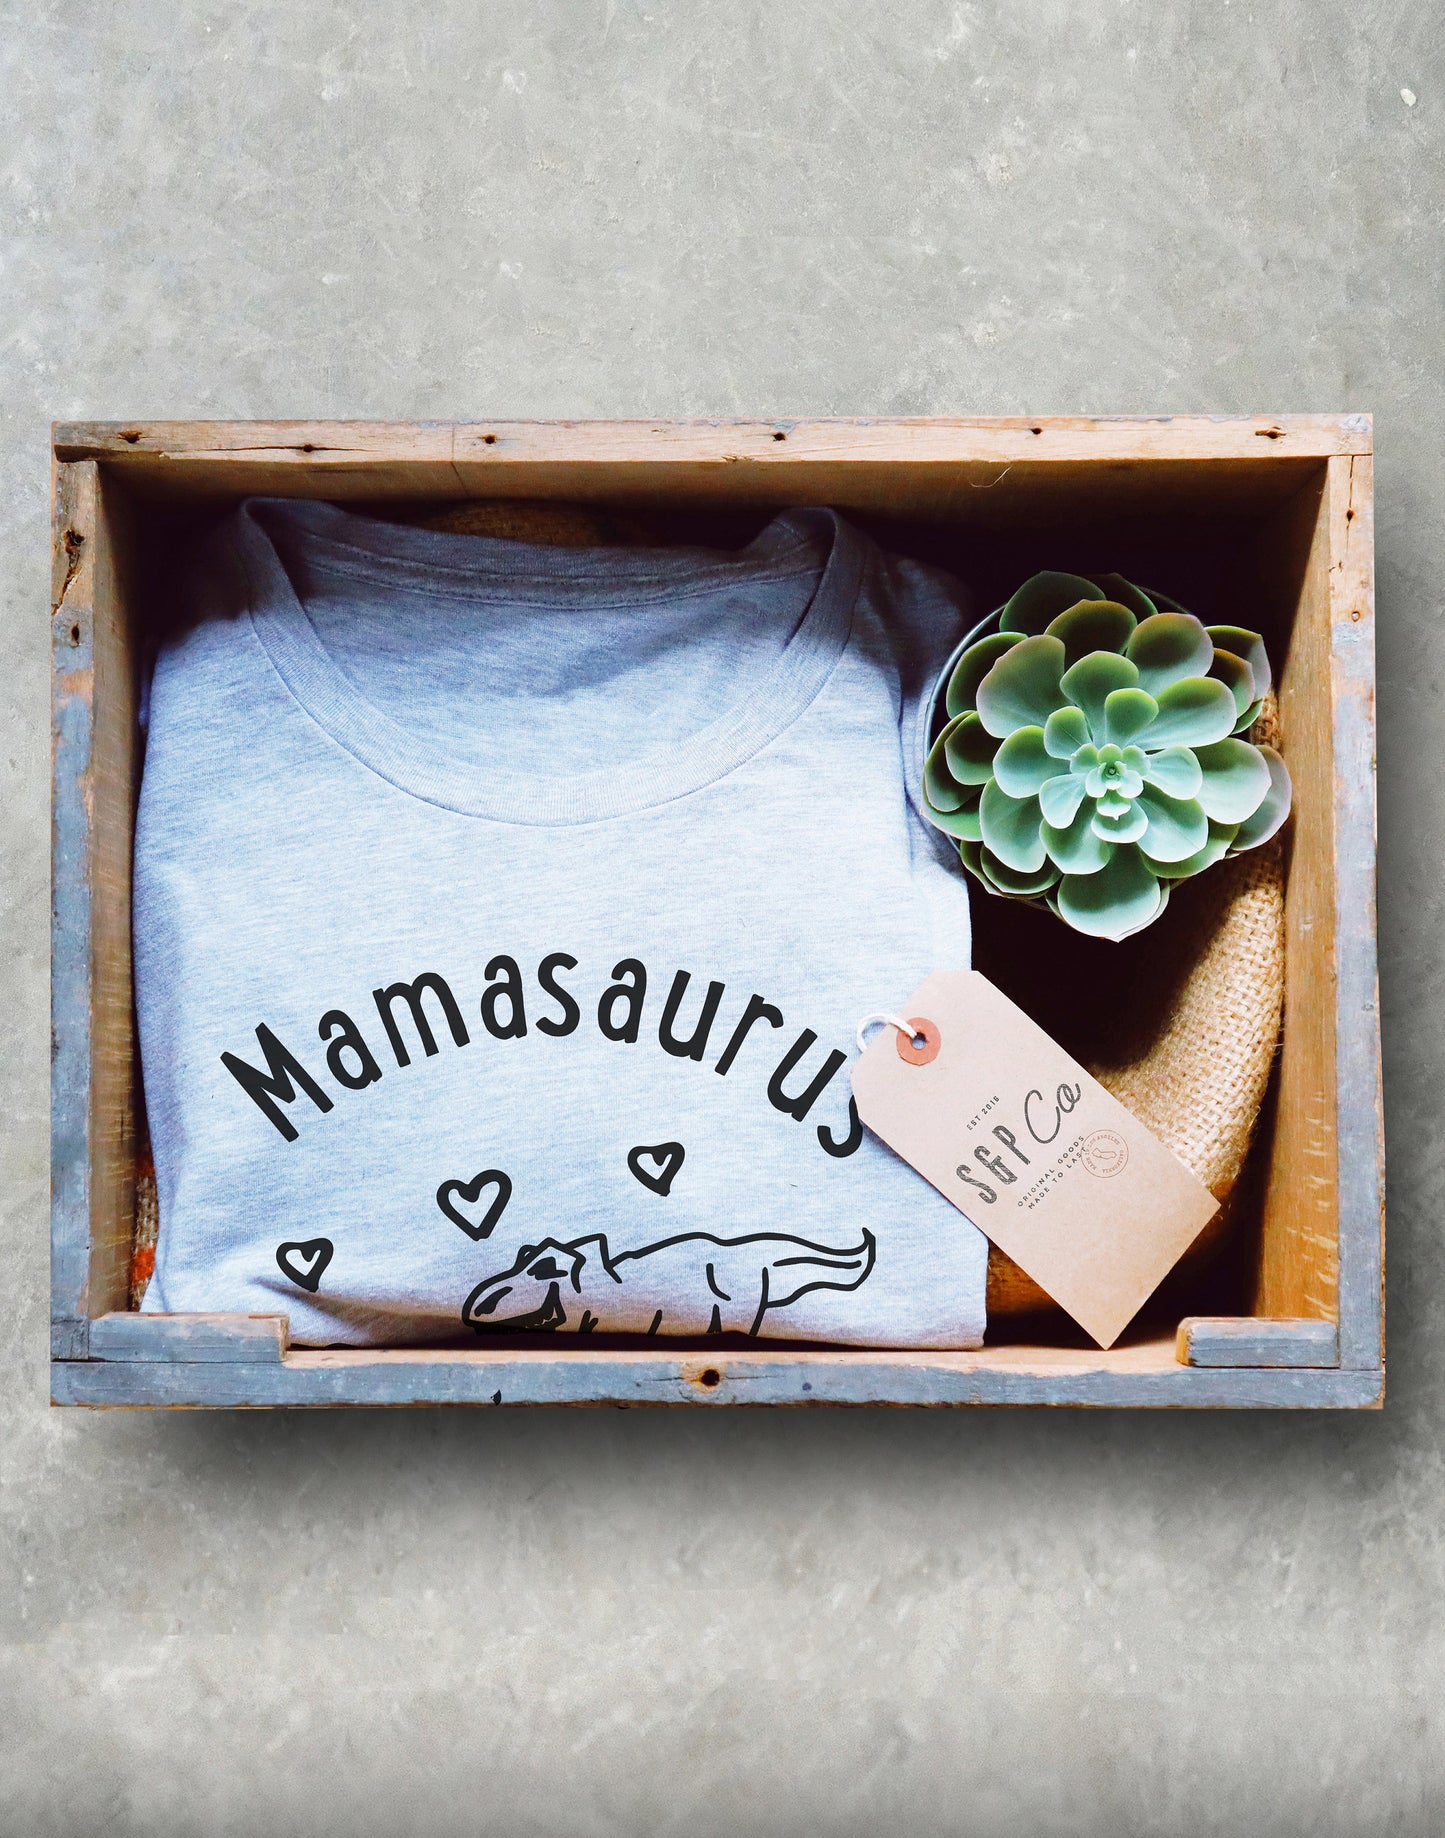 Mamasaurus Rex Unisex Shirt